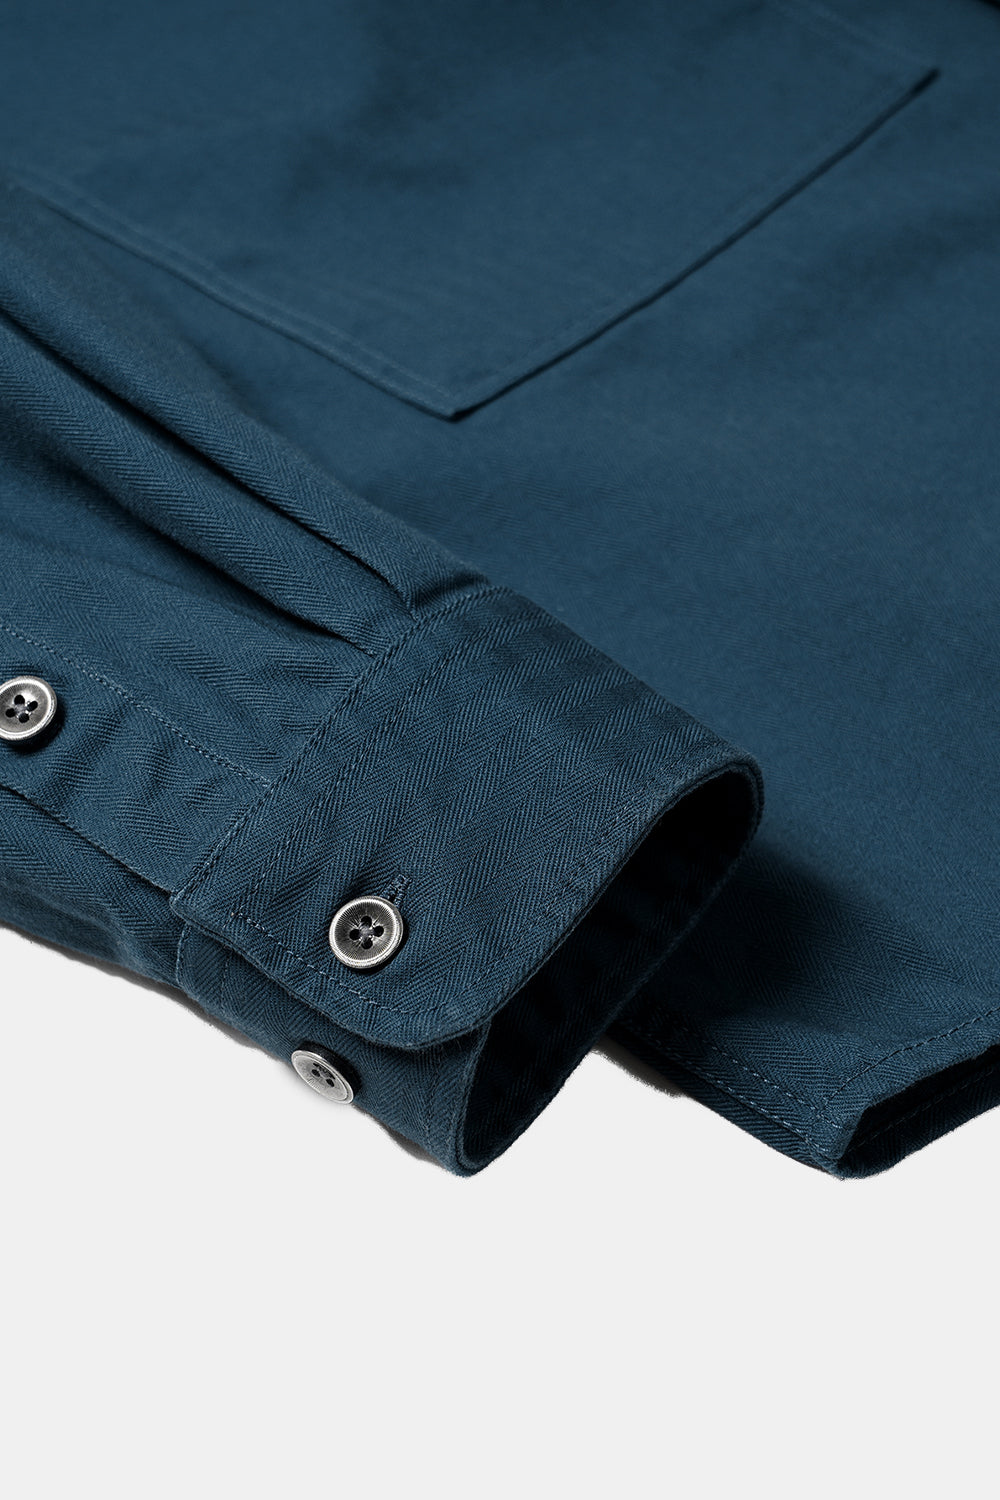 Frizmworks HBT Carpenter Pocket Work Shirt Jacket (Vintage Blue)